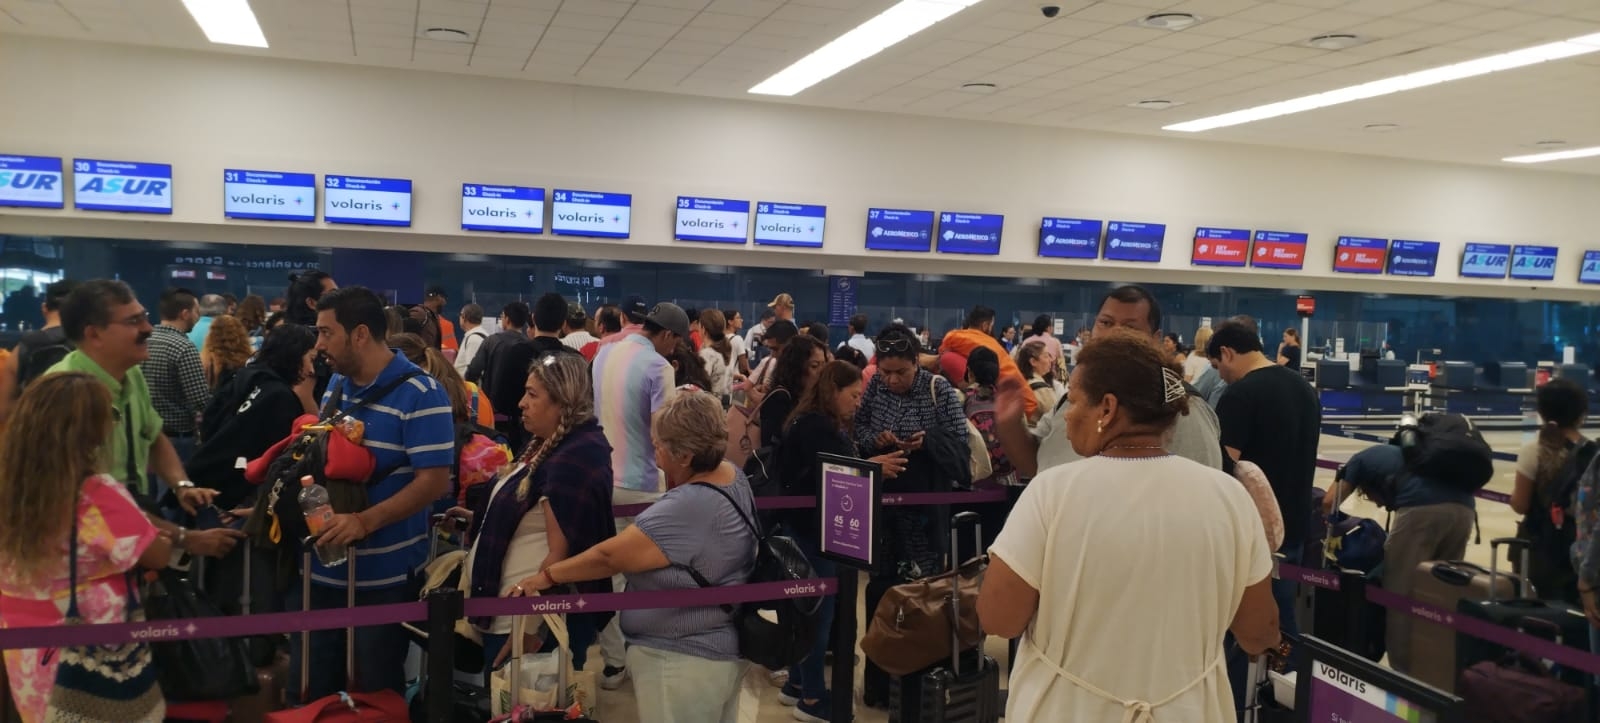 VivaAerobus retrasa dos vuelos en el aeropuerto de Mérida este sábado